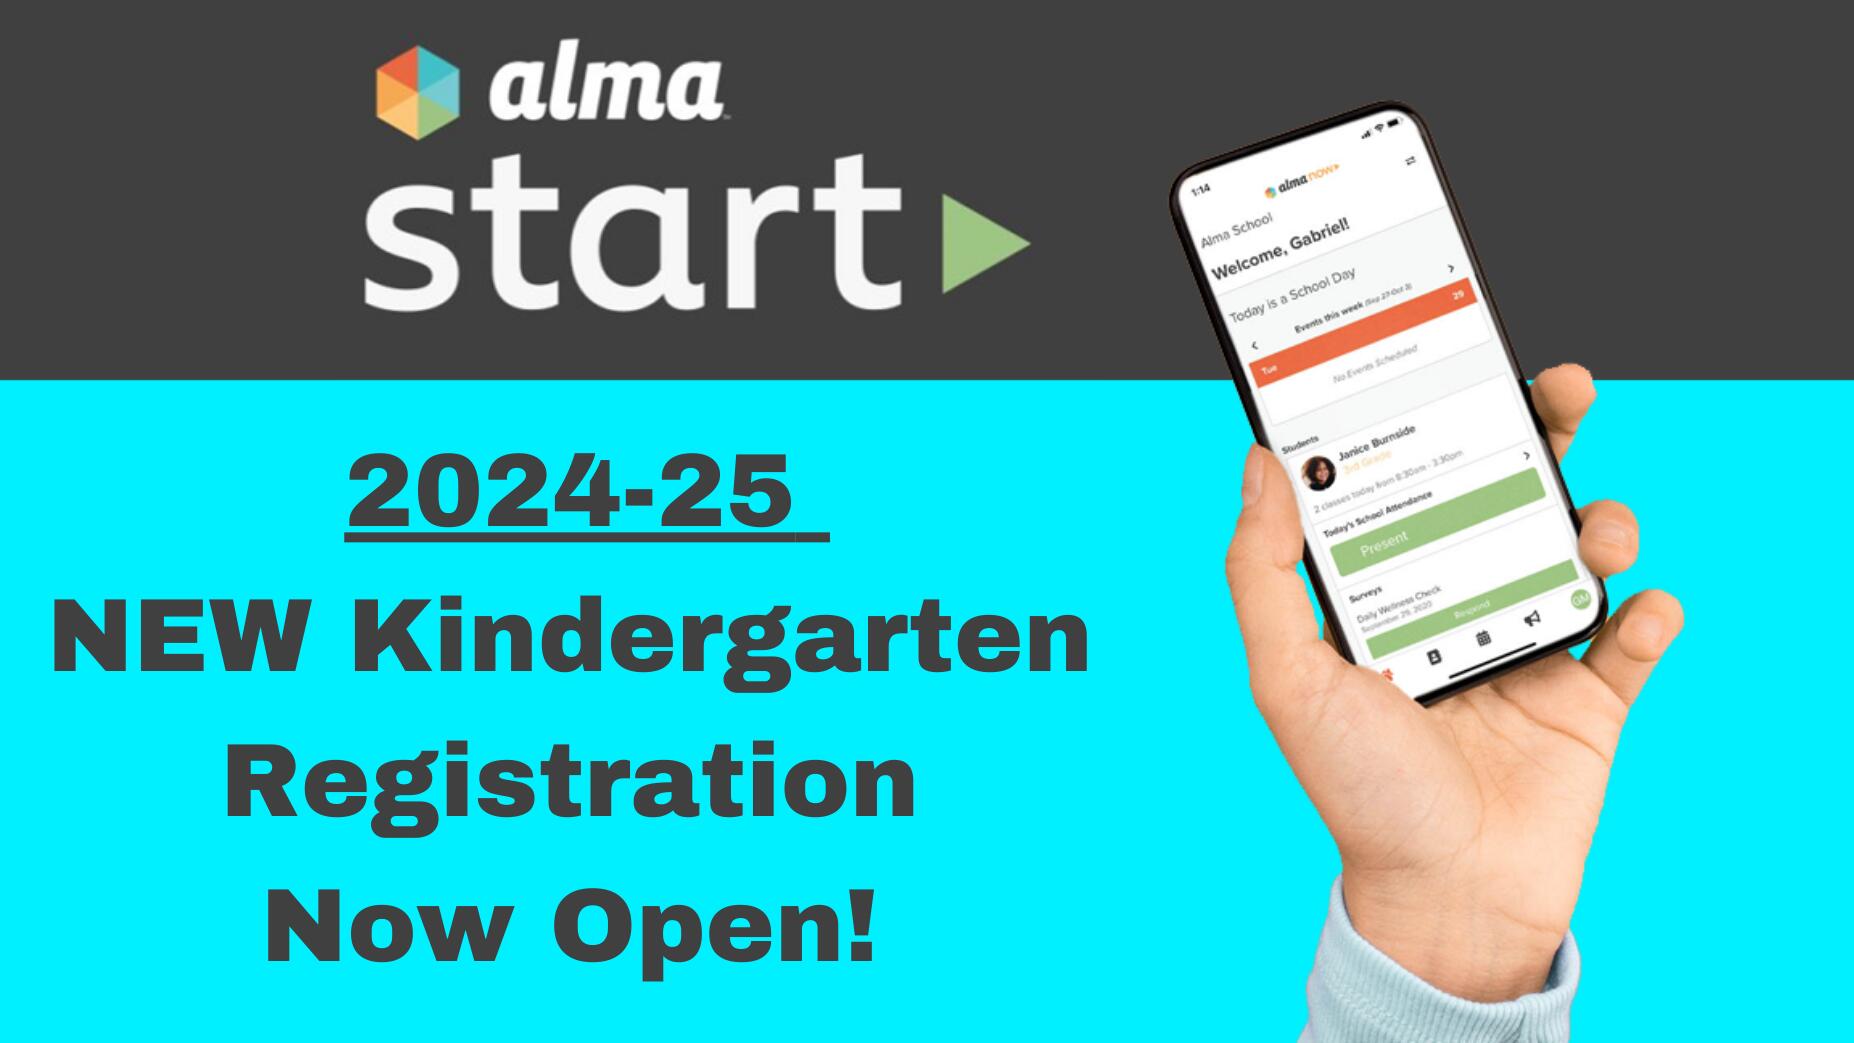 2024-25 NEW Kindergarten Registration Now Open!